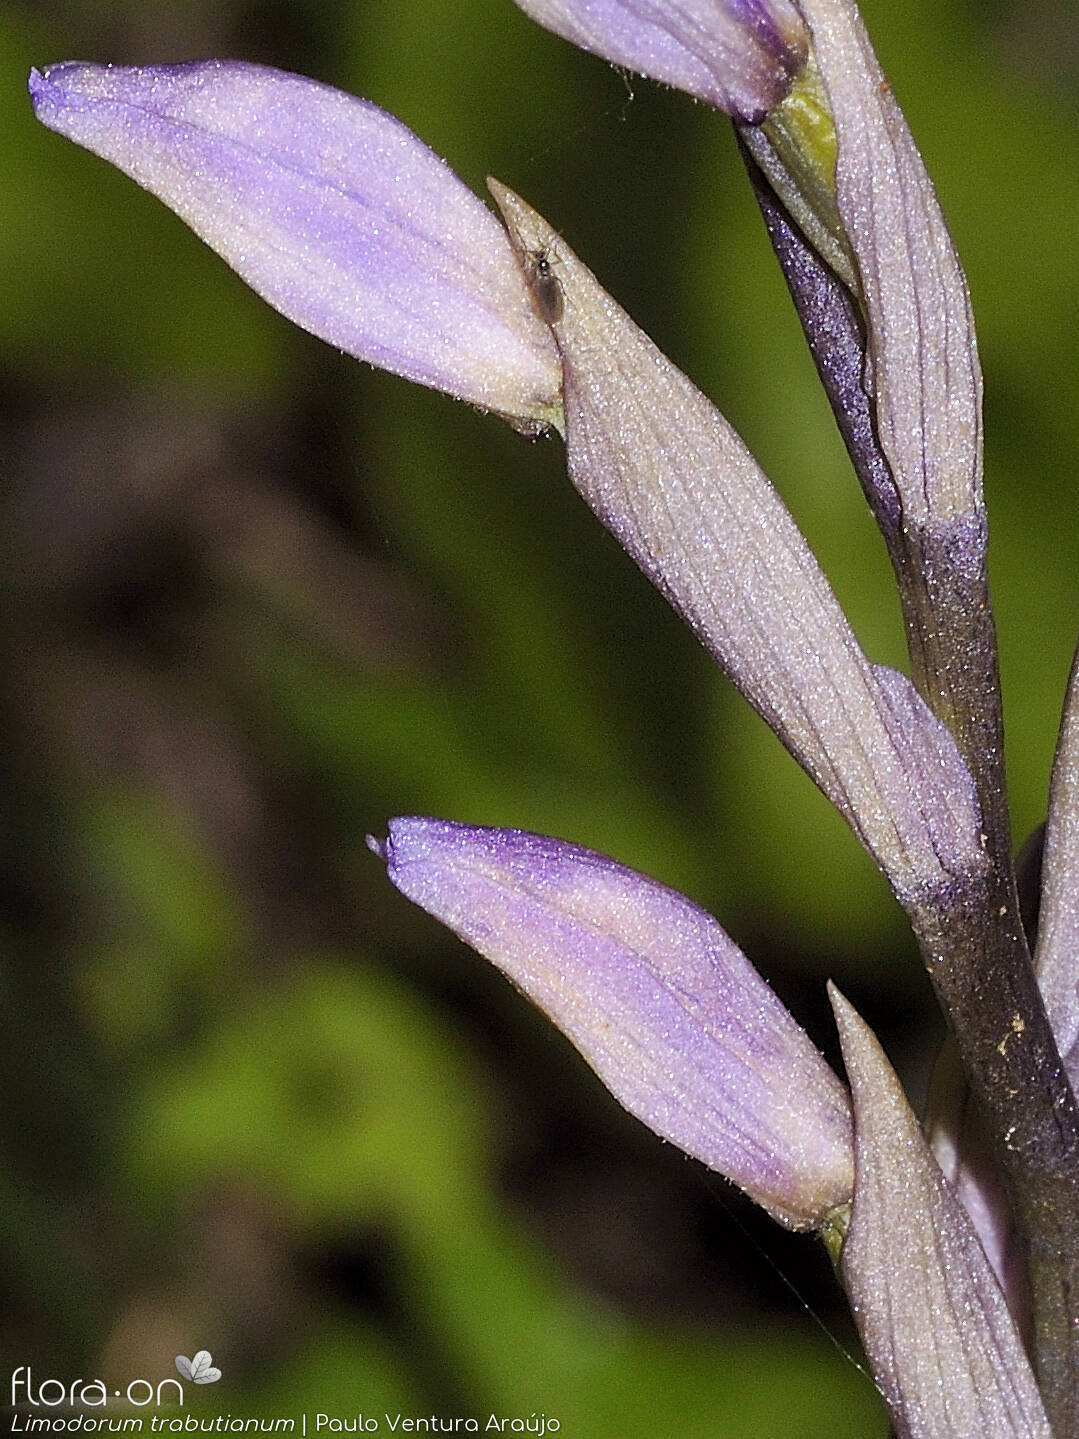 Limodorum trabutianum - Flor (close-up) | Paulo Ventura Araújo; CC BY-NC 4.0